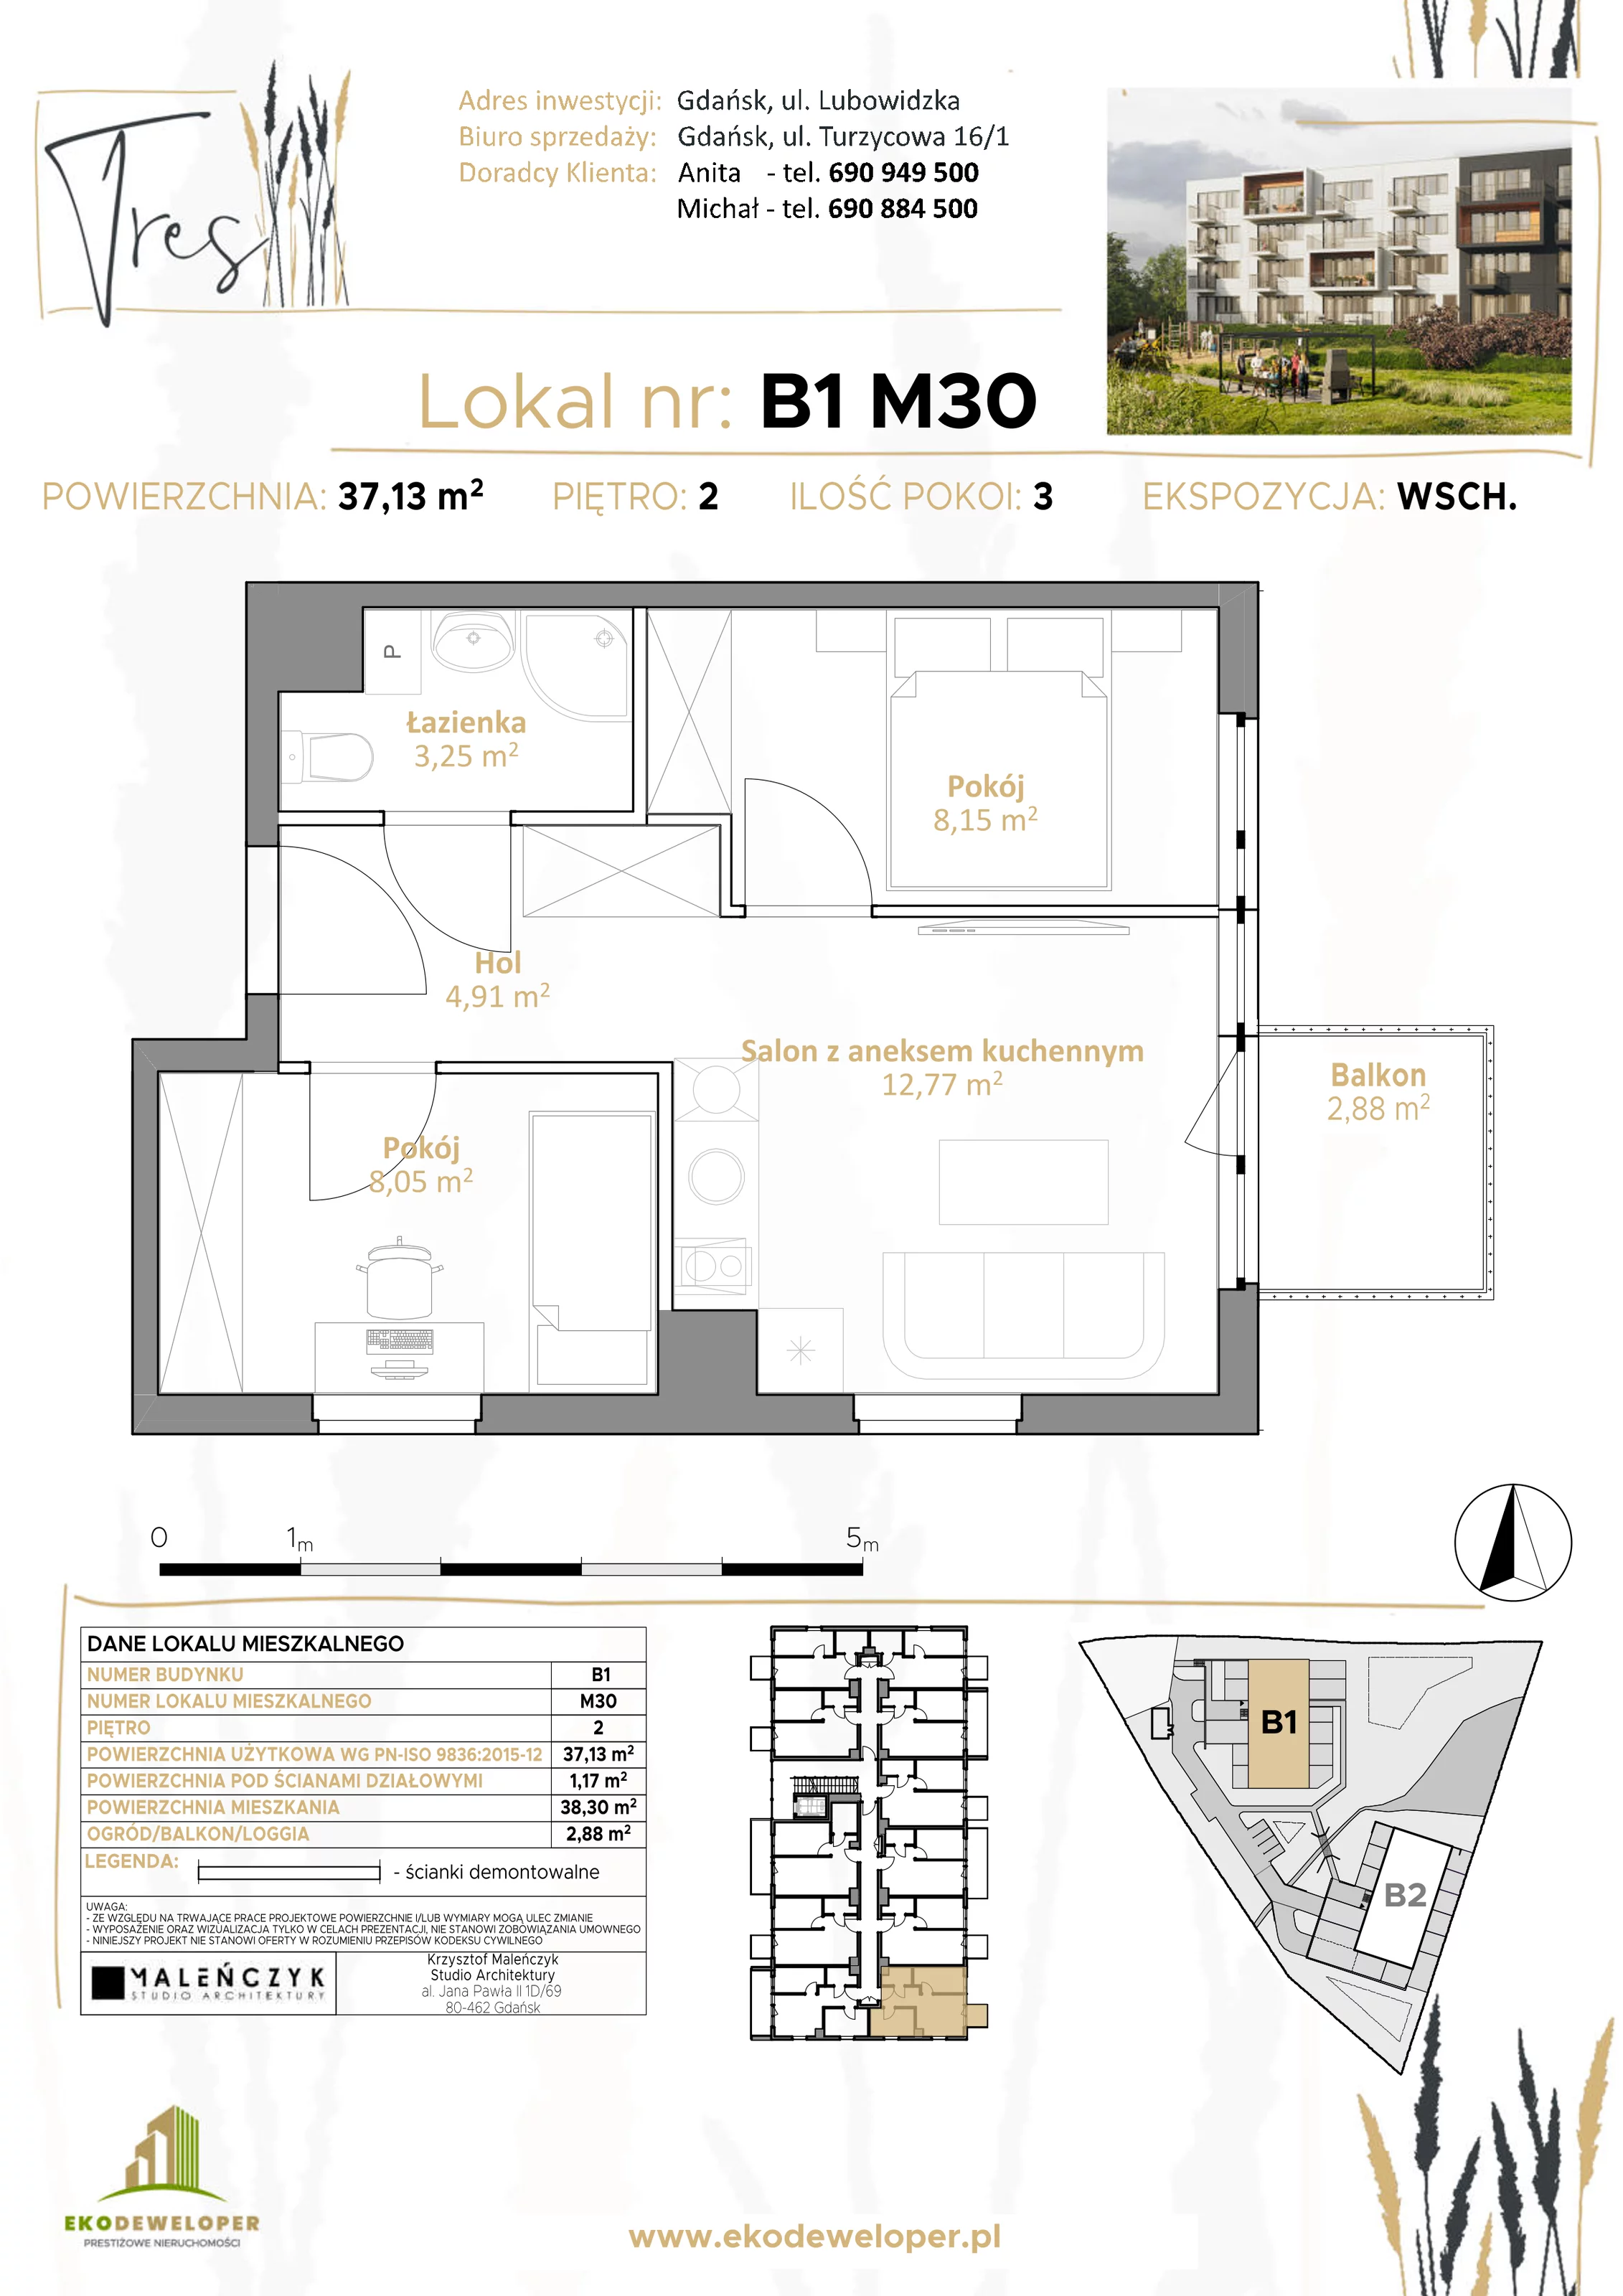 Mieszkanie 37,13 m², piętro 2, oferta nr B1.M30, Tres, Gdańsk, Jasień, ul. Lubowidzka